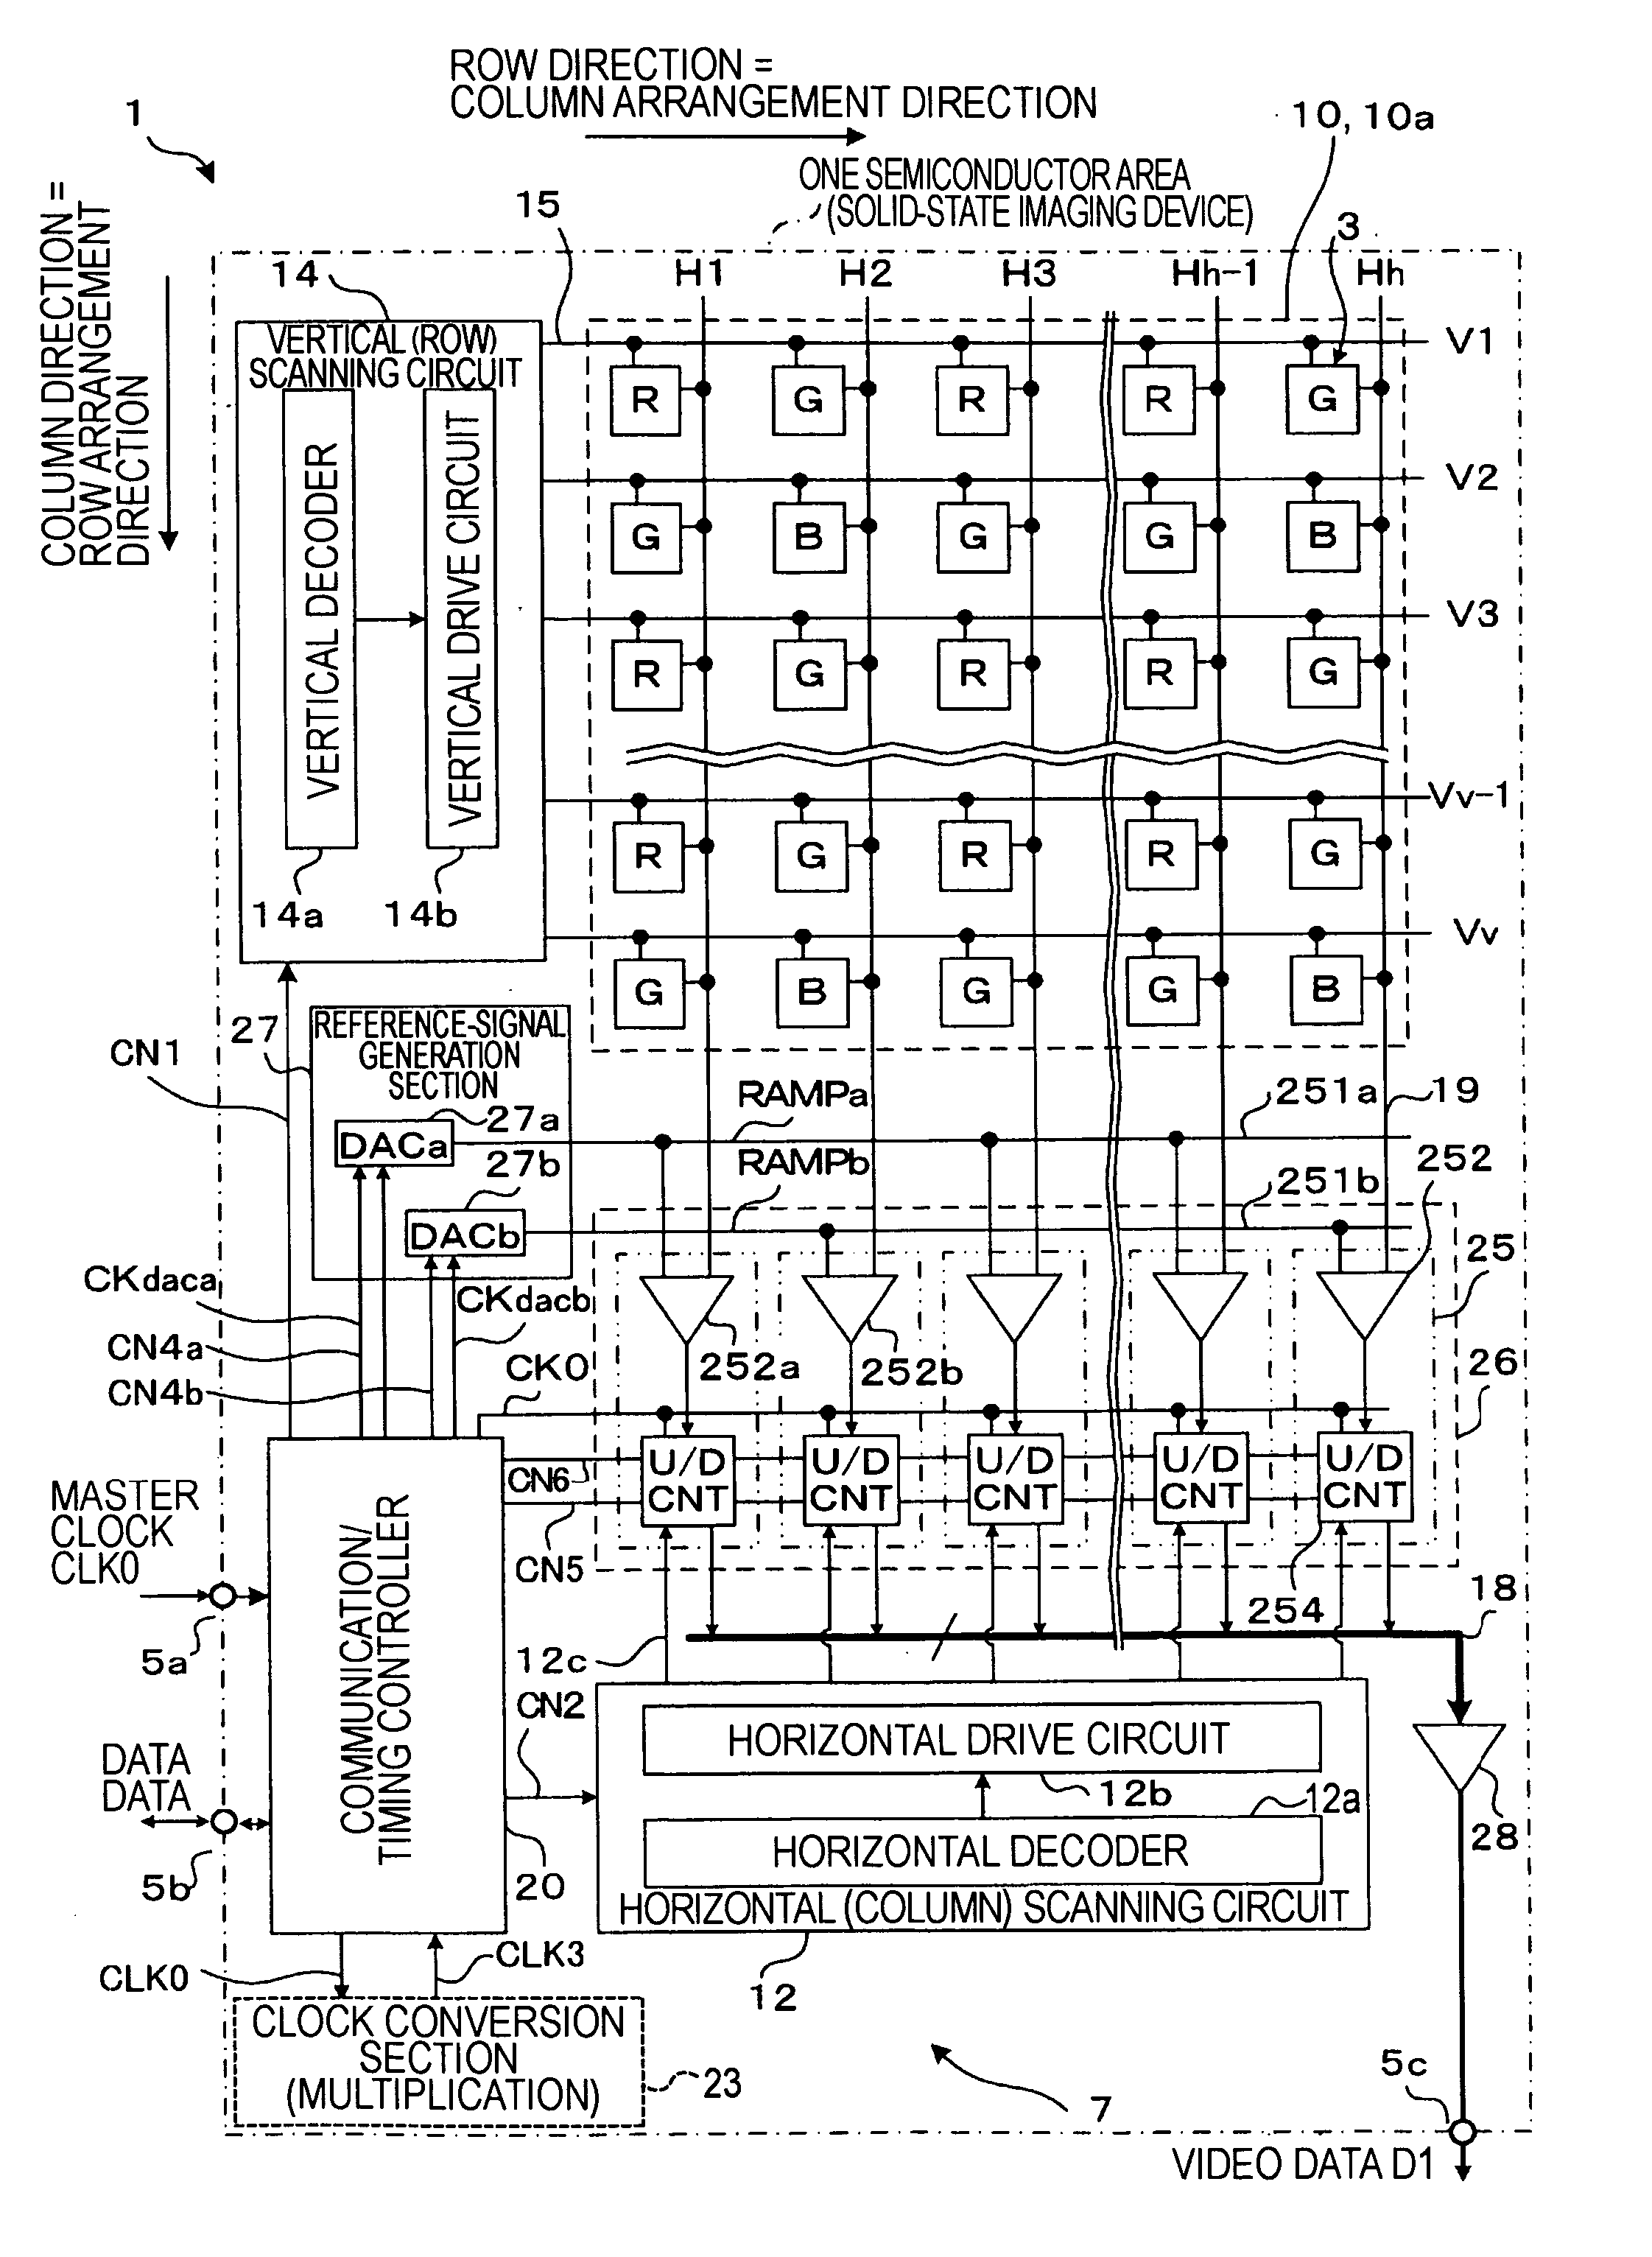 DA converter, AD converter, and semiconductor device